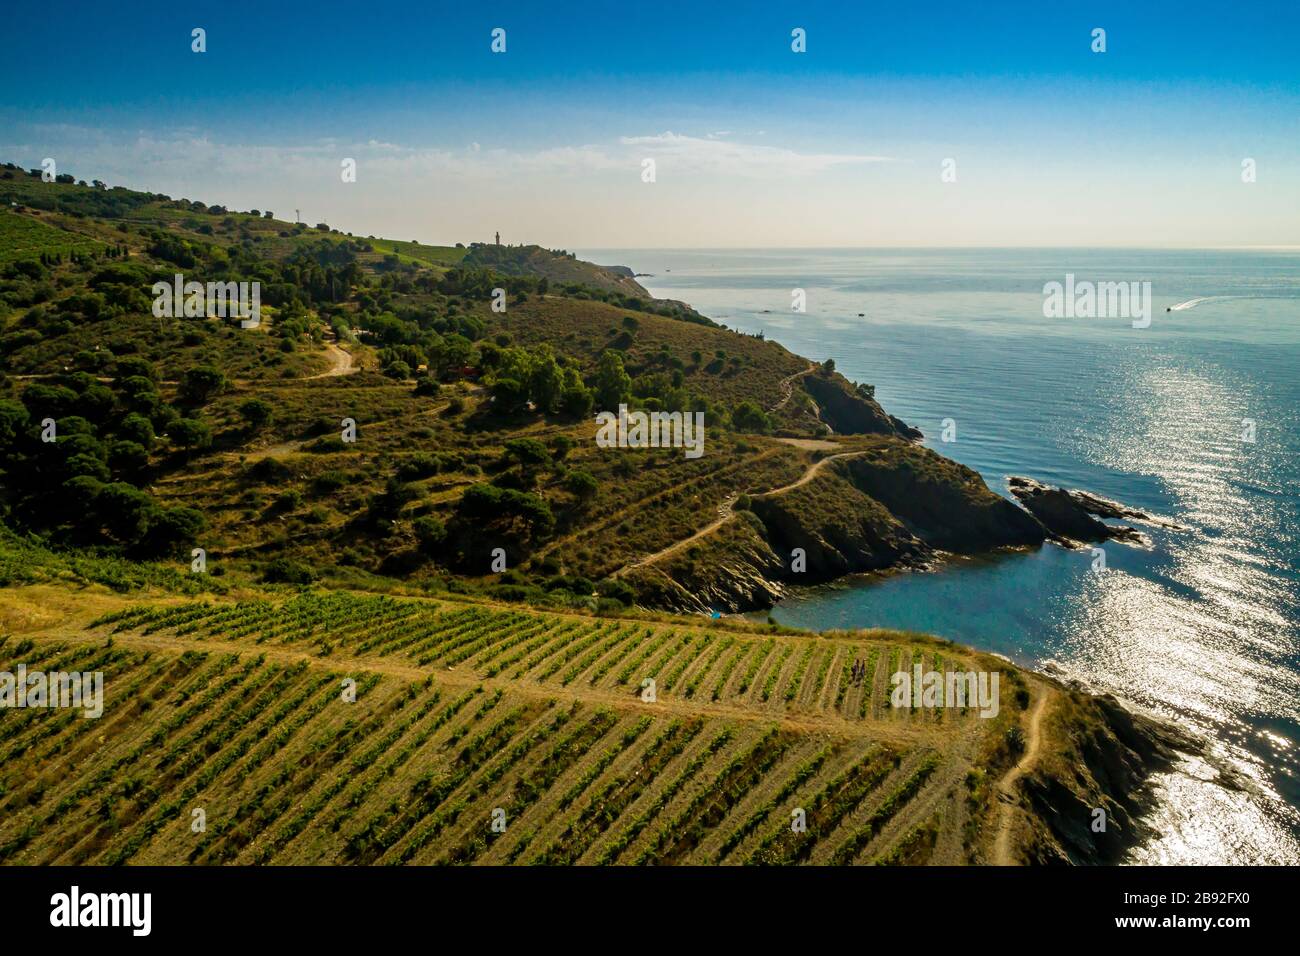 nte de vin dou de collioure et de banyuls au domaine Cazes, Port Vendres. Stock Photo